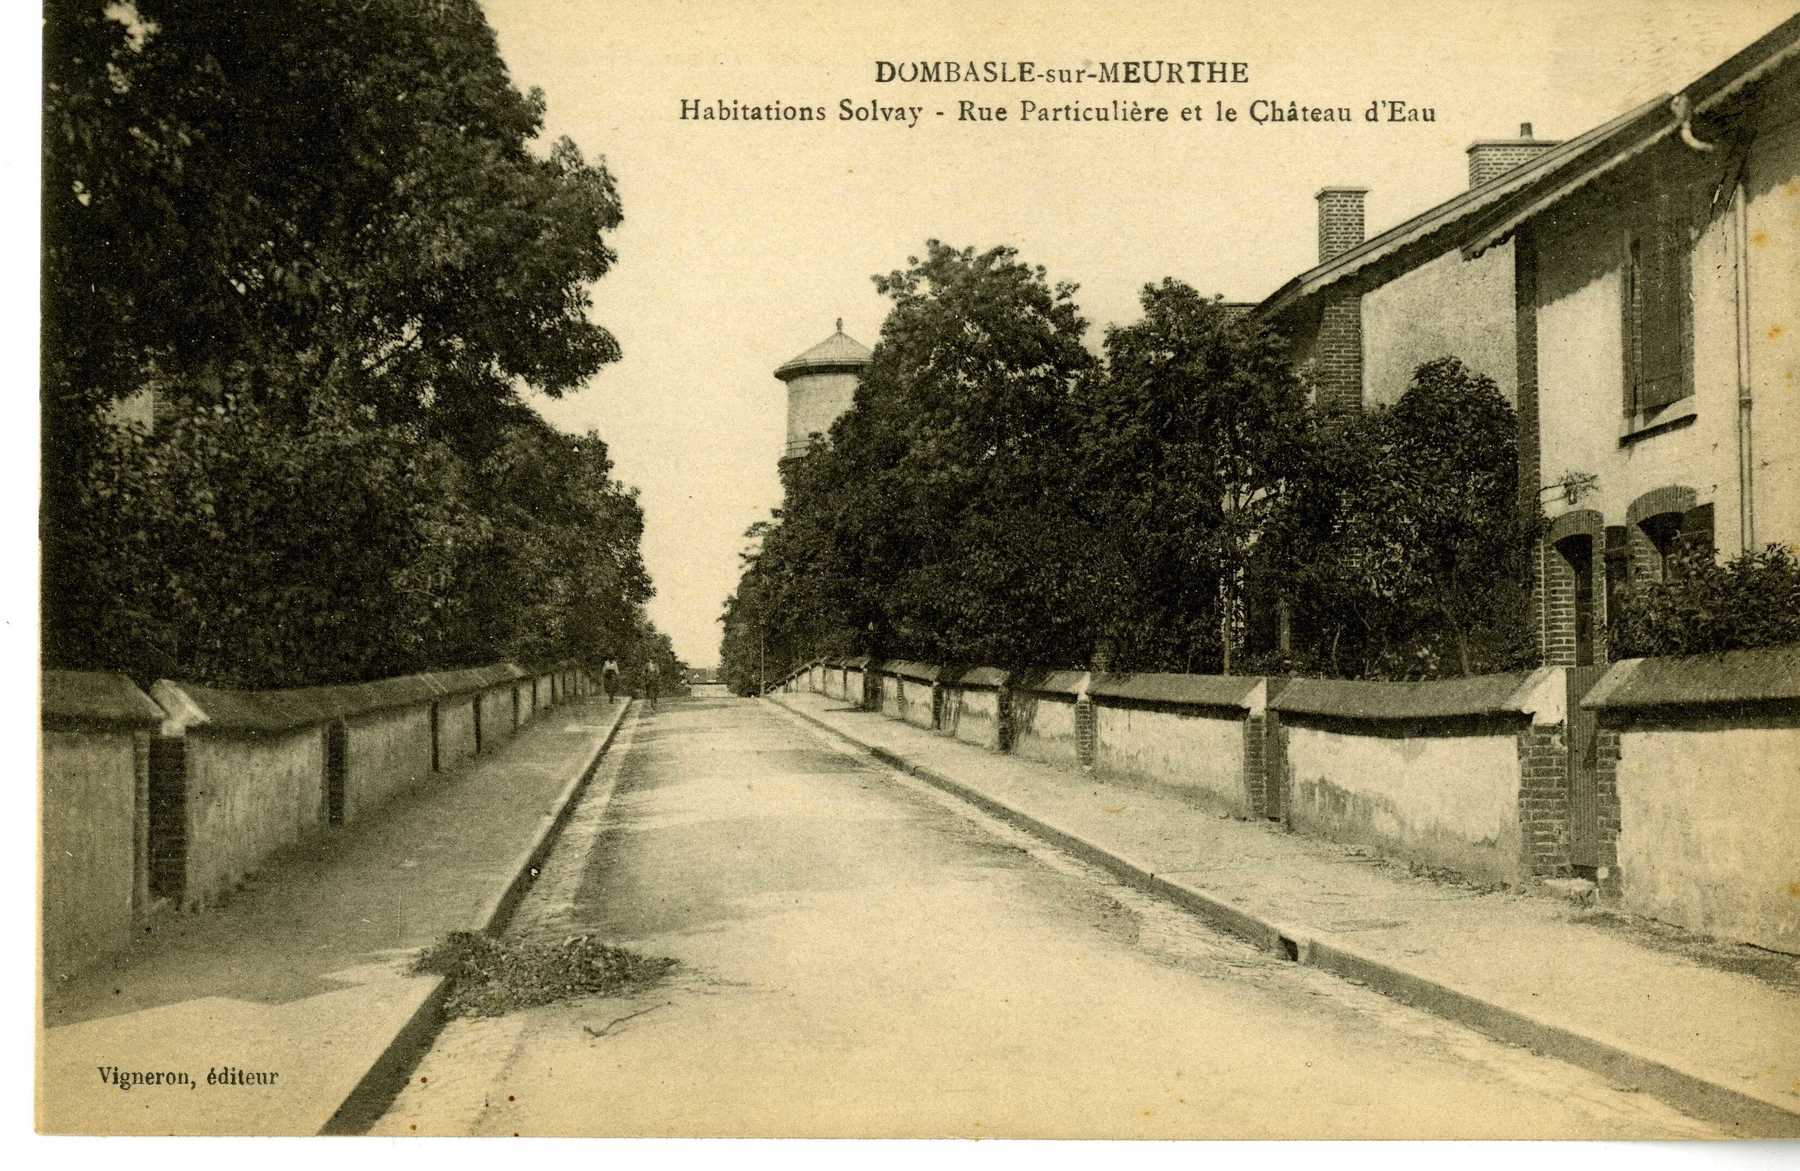 Contenu du Dombasle-sur-Meurthe : habitations Solvay, rue particulière et le château d'eau